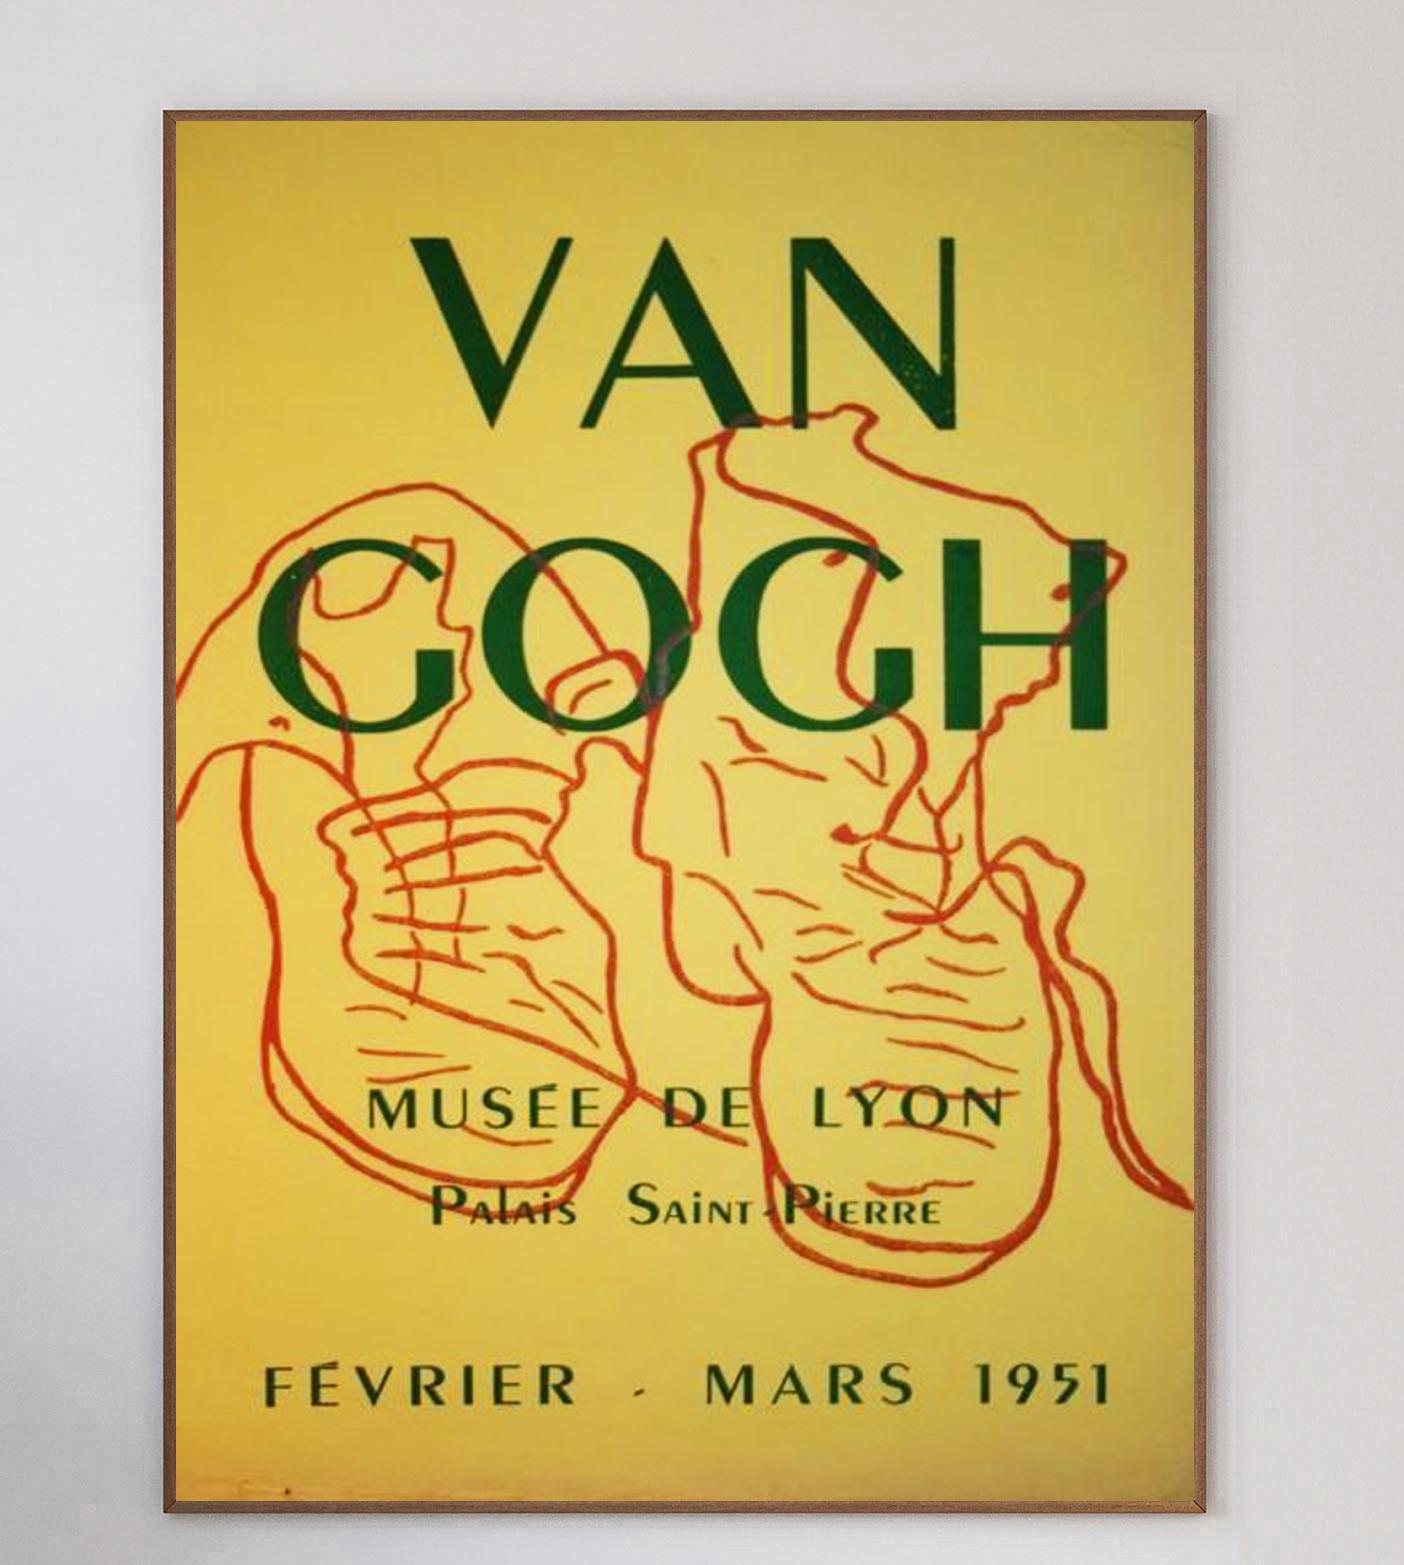 Precioso cartel publicitario de una exposición del legendario pintor expresionista holandés Vincent van Gogh. Esta vibrante pieza, expuesta en el Museo de Lyon (Francia) entre febrero y marzo de 1951, representa un boceto simplificado de su cuadro